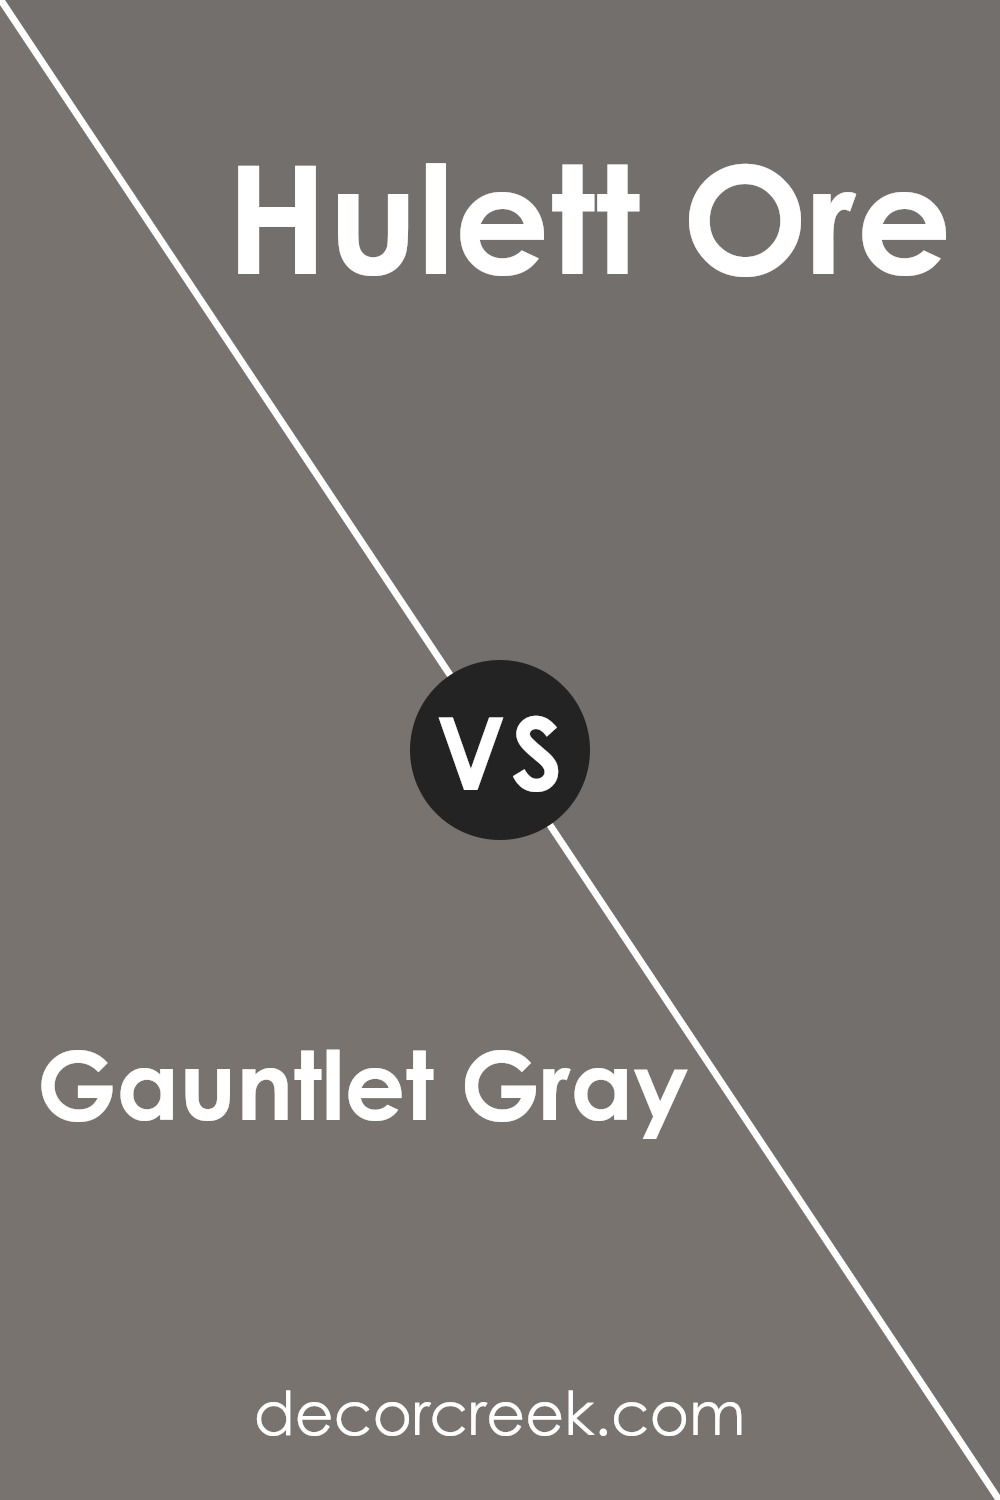 gauntlet_gray_sw_7019_vs_hulett_ore_sw_9574